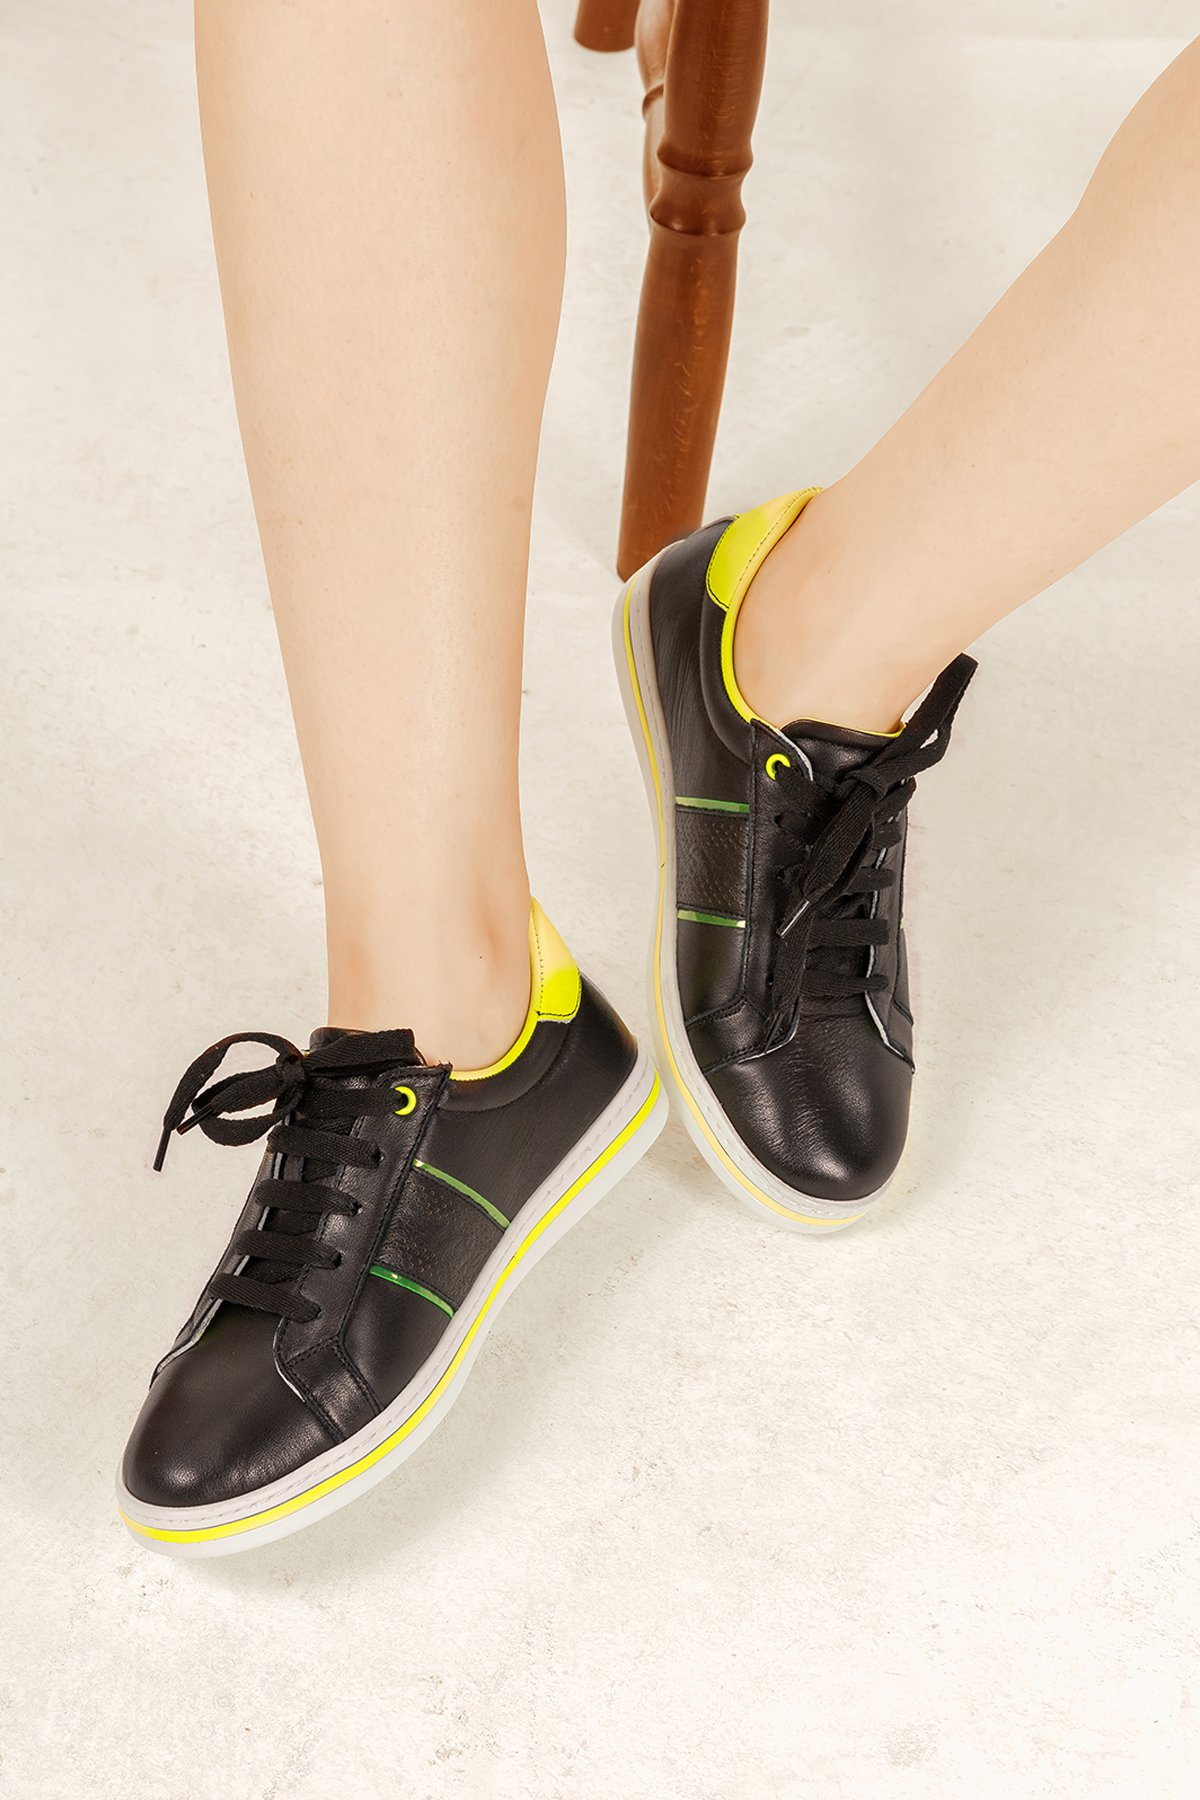 Cooliza Hakiki Deri Bağcıklı Renkli Rahat Kadın Günlük Yürüyüş Spor Ayakkabı - Siyah-Neon Sarı